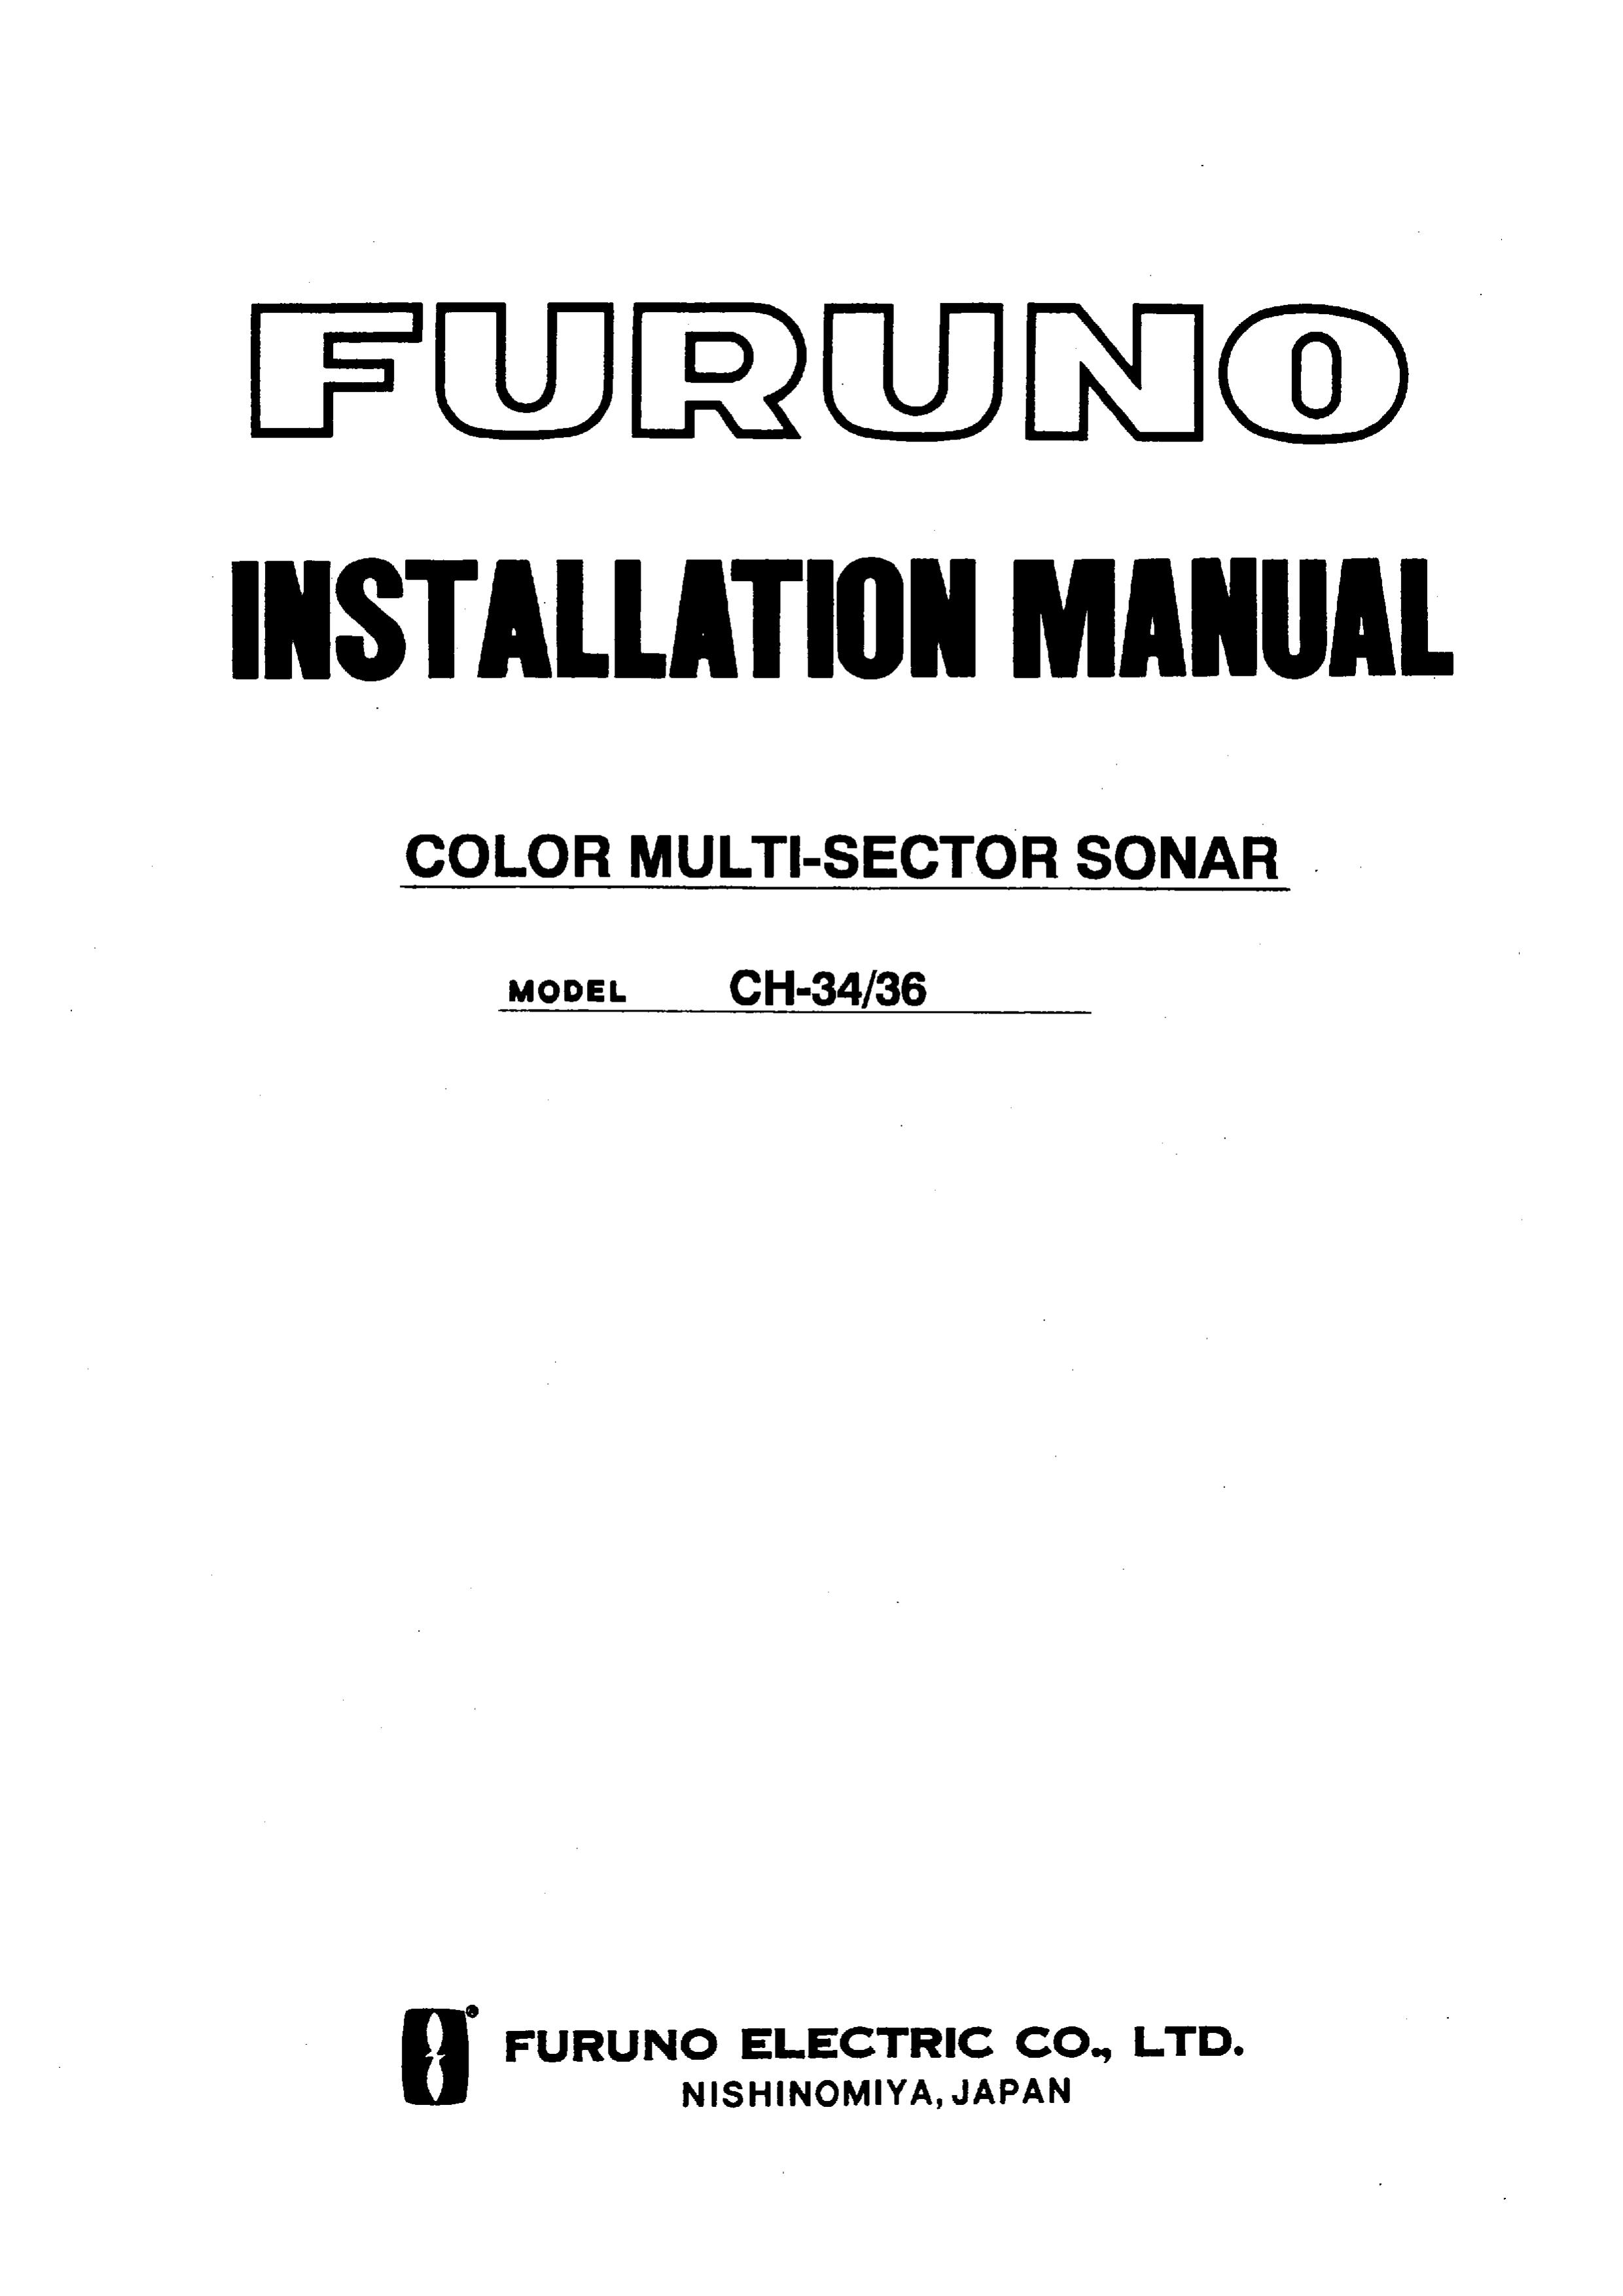 Furuno CH-34/36 SONAR User Manual